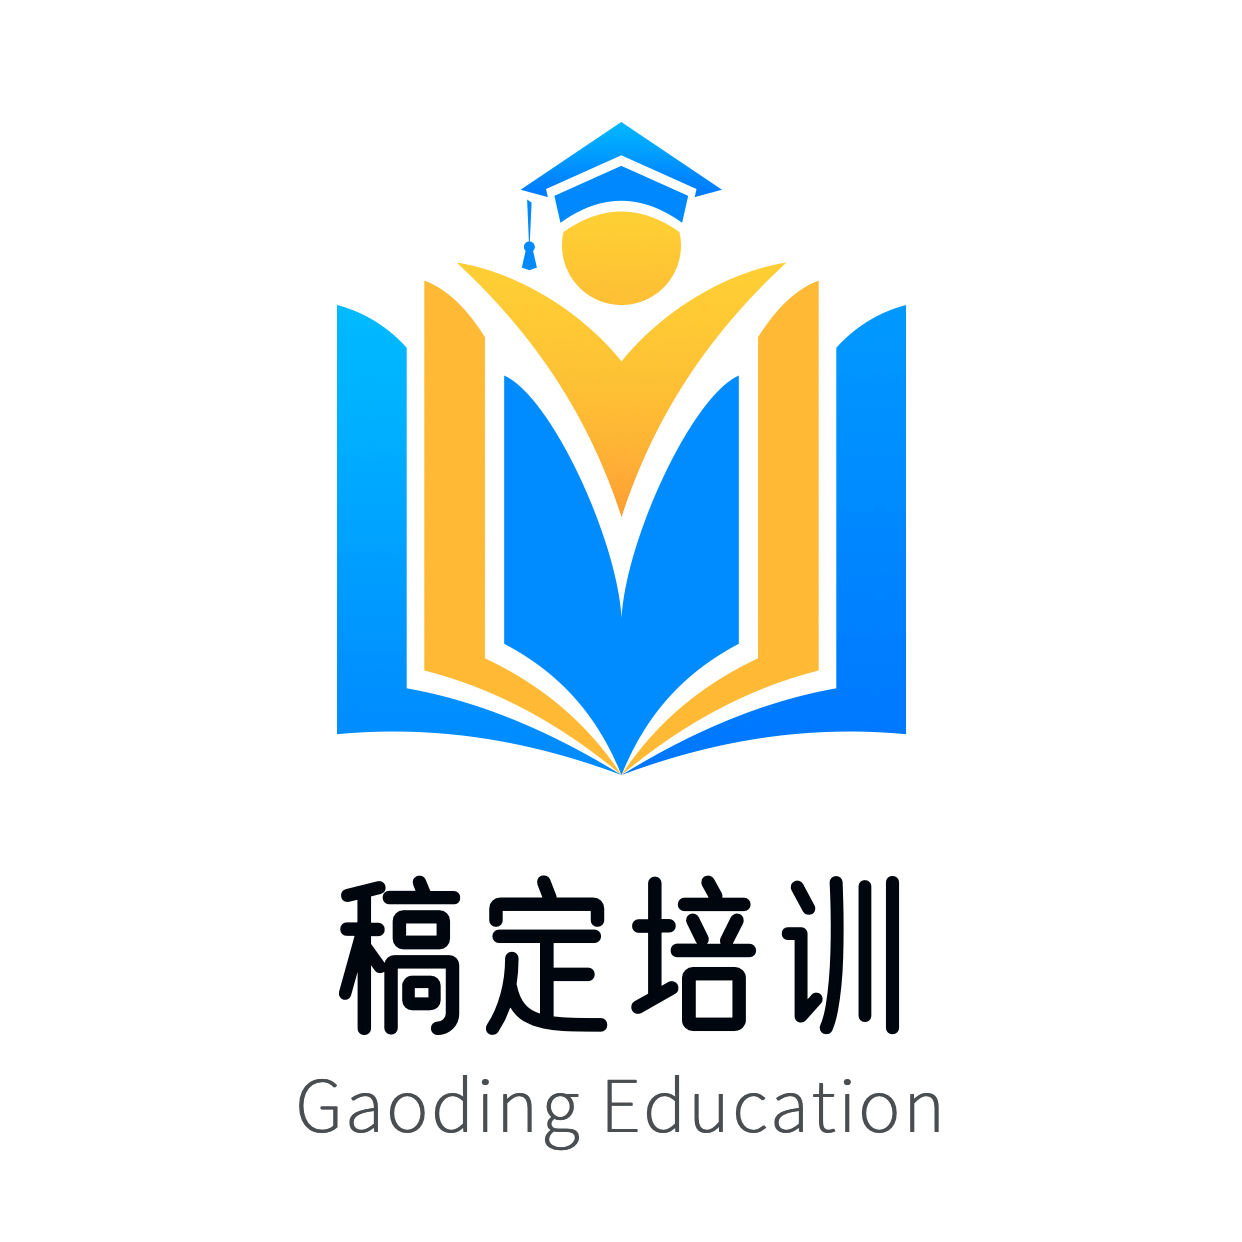 教育培训创意手绘头像logo